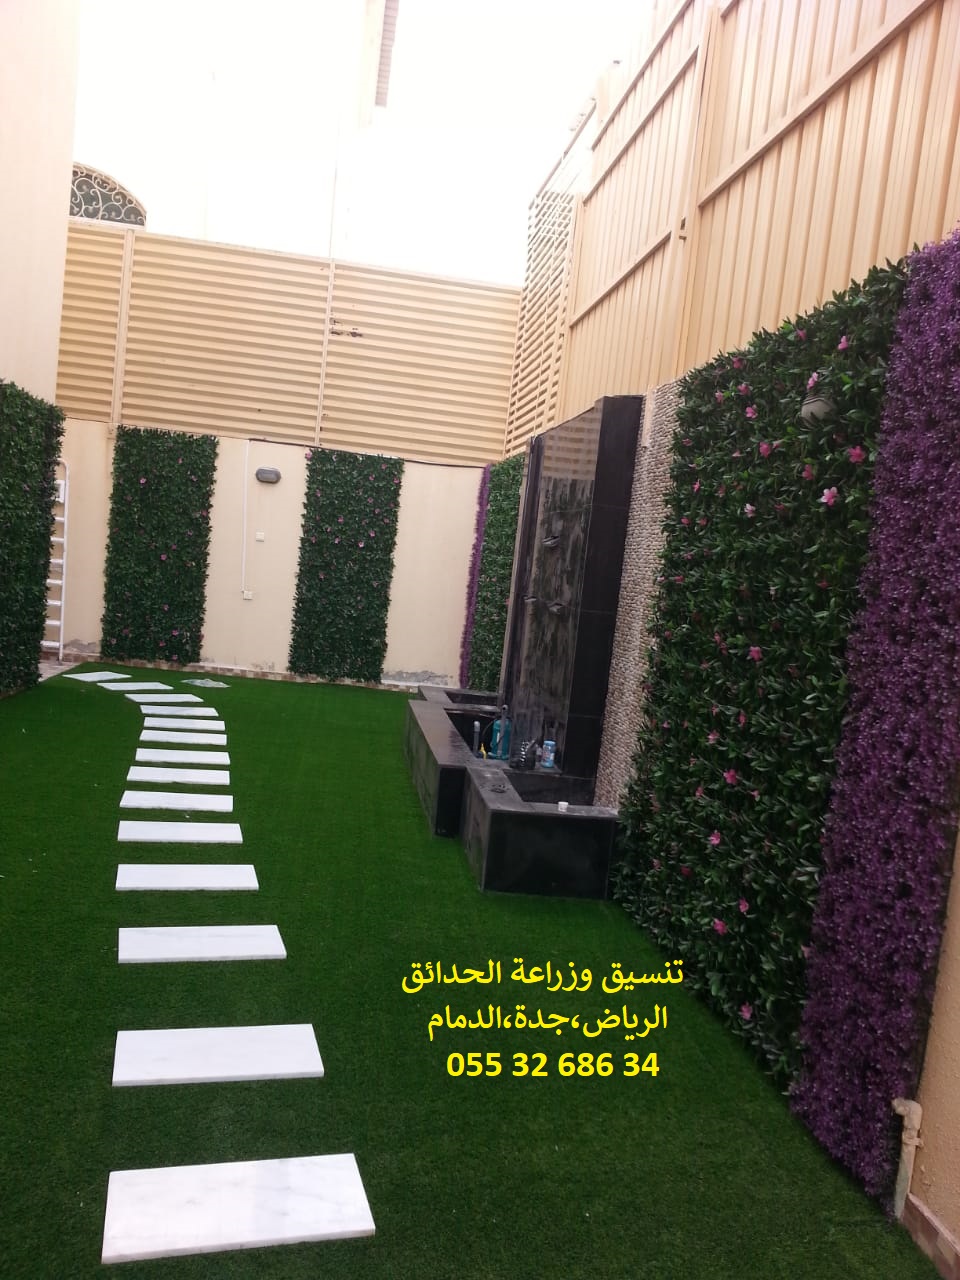 شركة تنسيق حدائق عشب صناعي عشب جداري الرياض جدة الدمام 0553268634 P_1143e5okc10